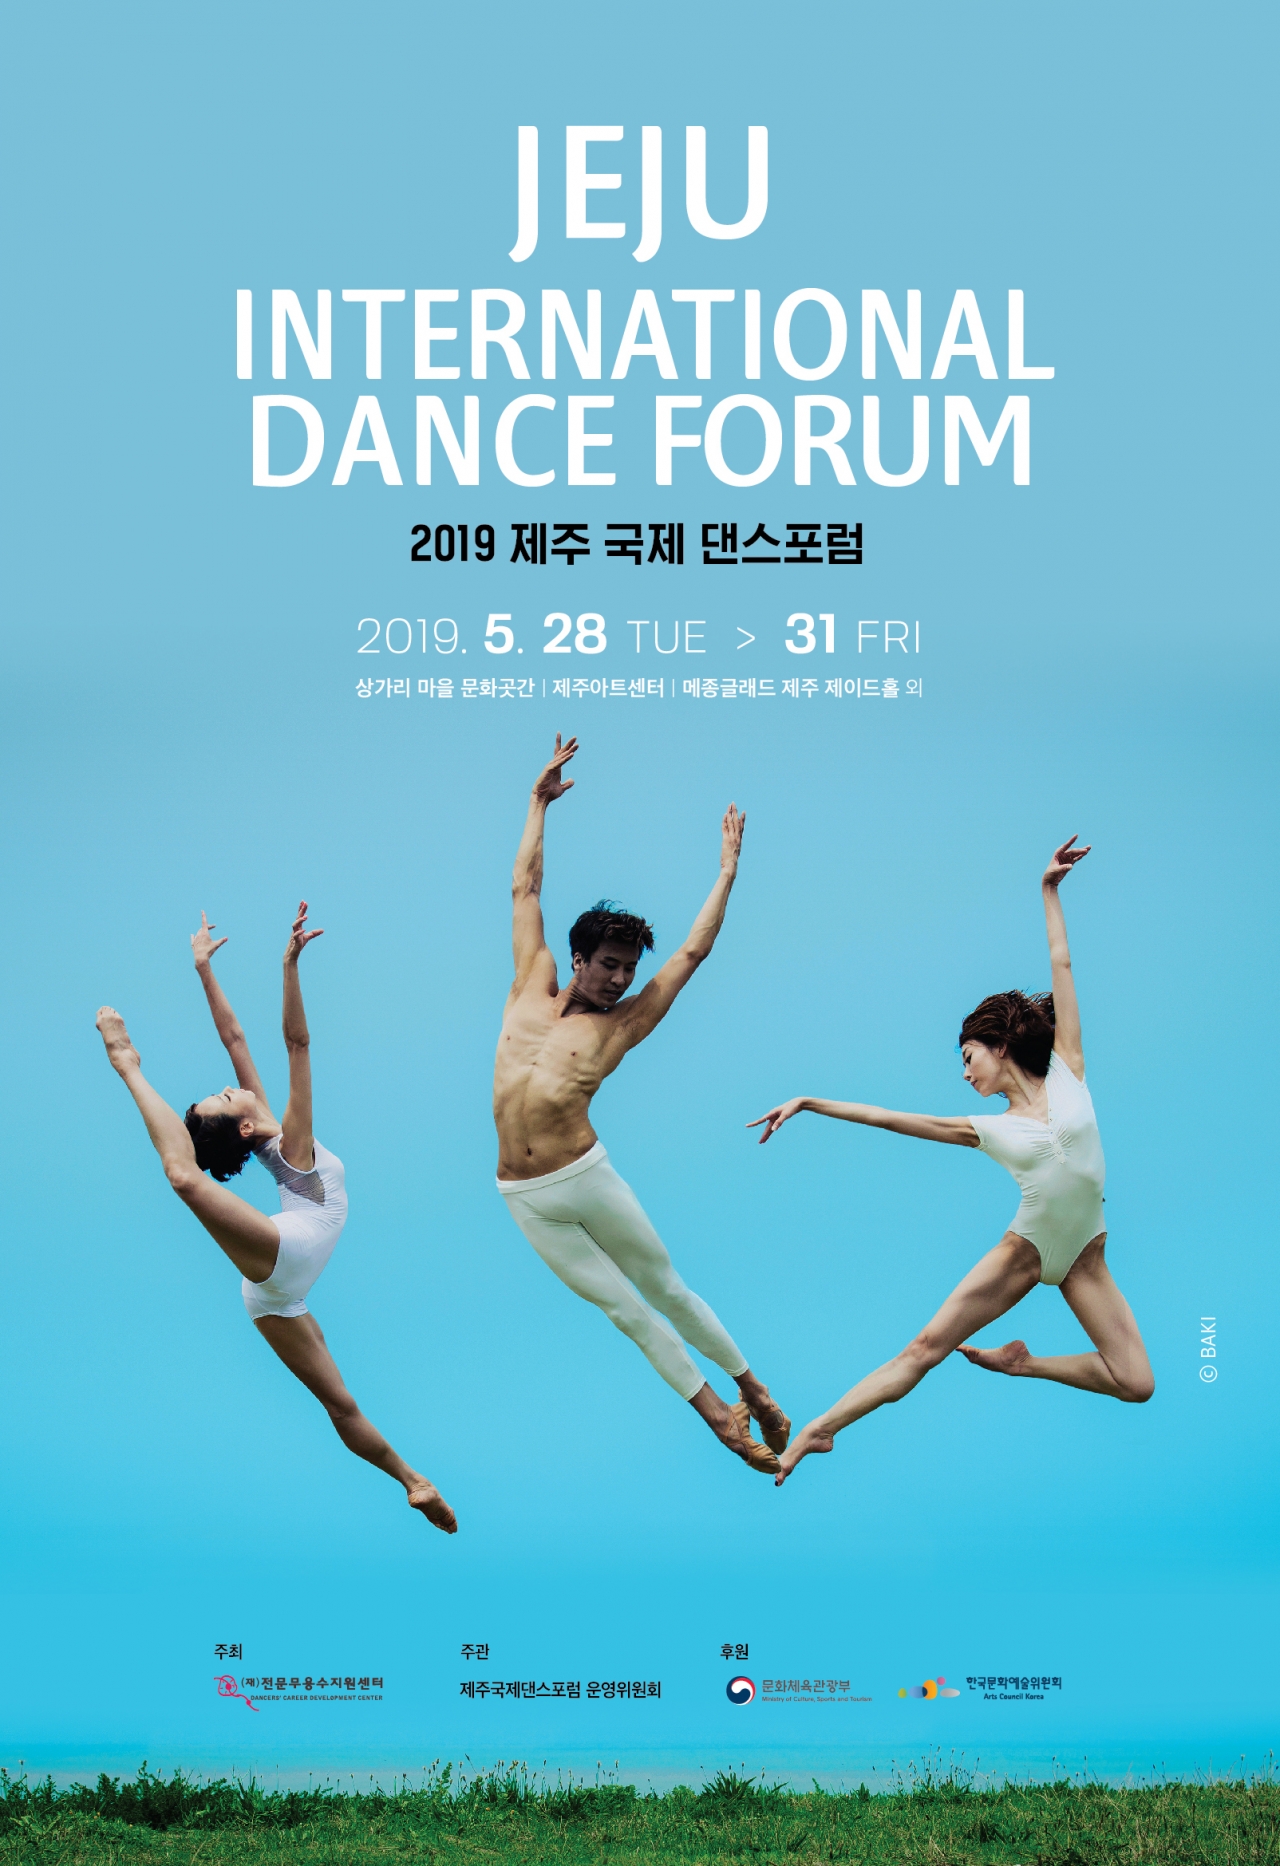 (재)전문무용수지원센터(이하 센터, 이사장 박인자)는 오는 28일부터 31일까지 제주지역 일대에서 2019 제주 국제 댄스포럼을 개최한다고 14일 밝혔다.